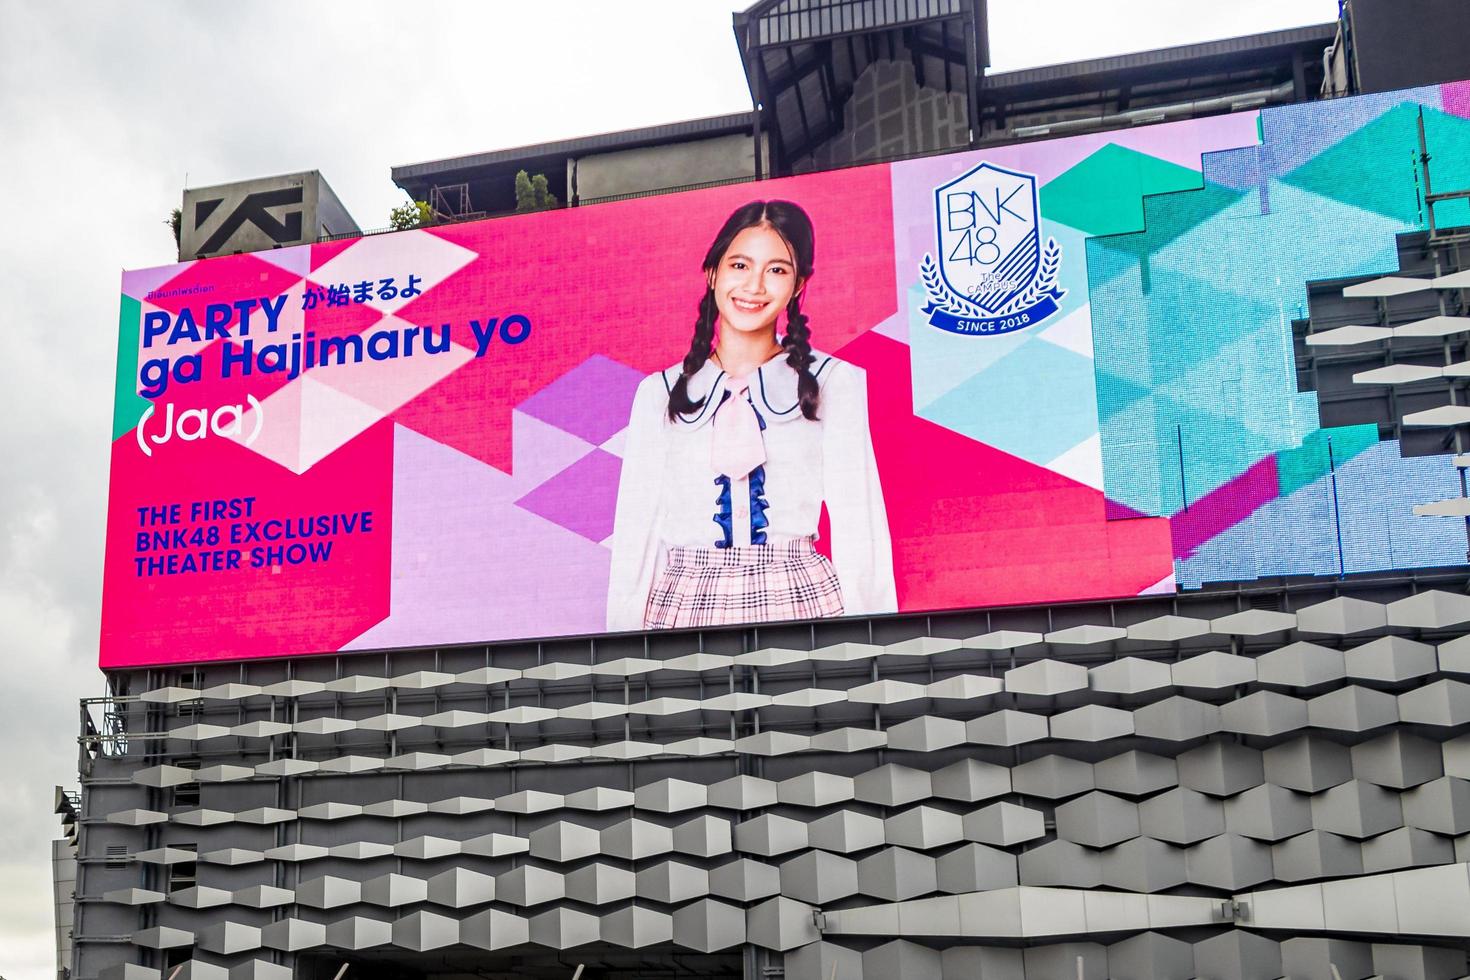 bangkok thaïlande 22. mai 2018 d'énormes écrans colorés au centre commercial building bangkok thaïlande. photo